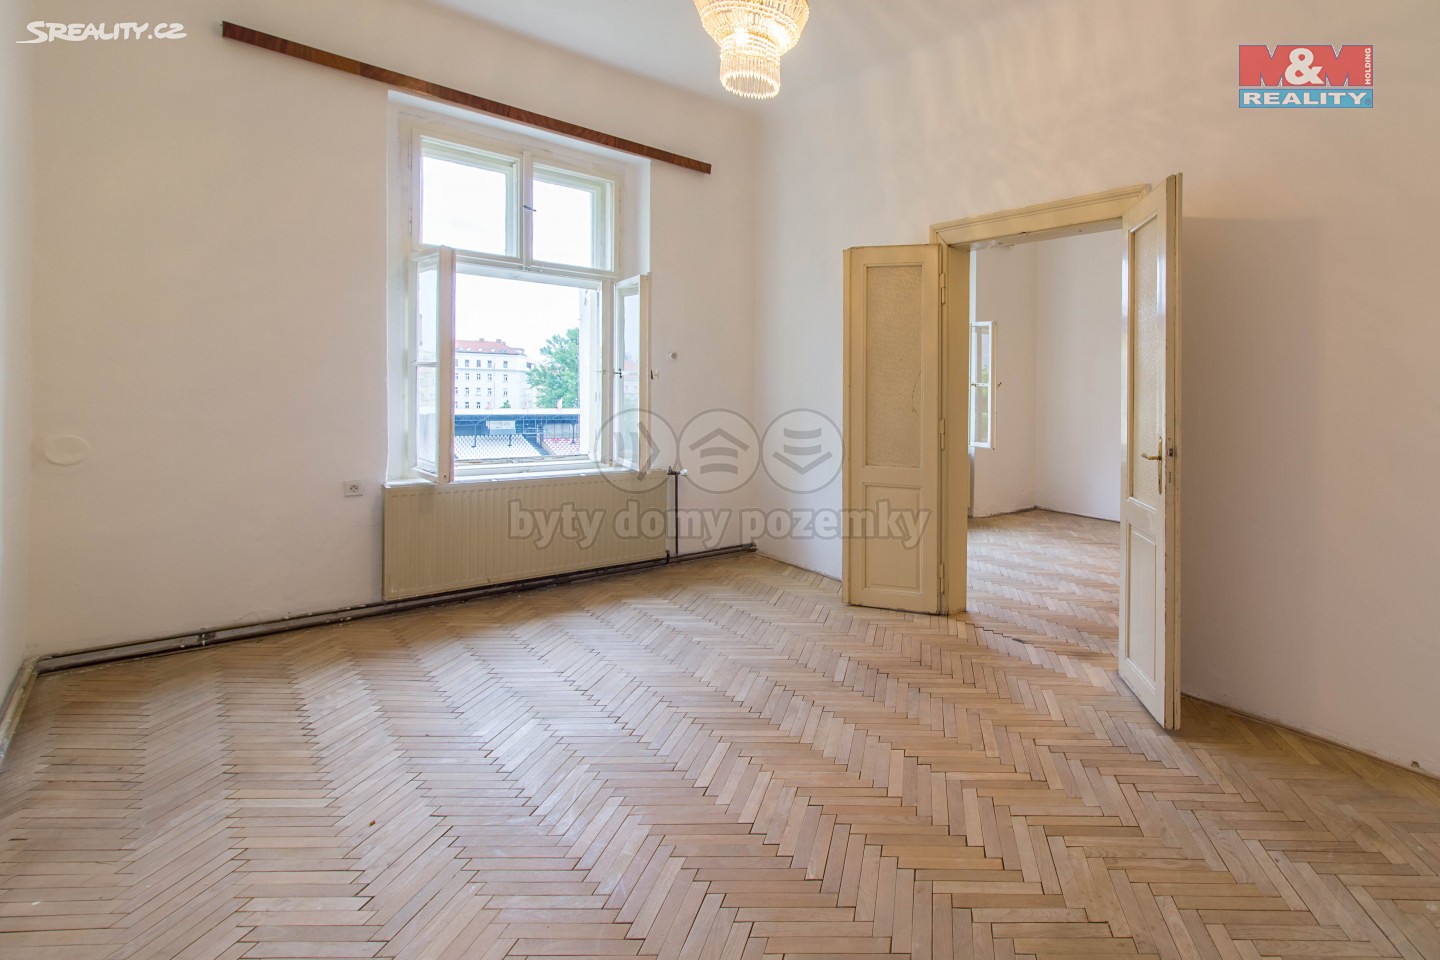 Prodej bytu 3+1 108 m², Praha 3 - Žižkov